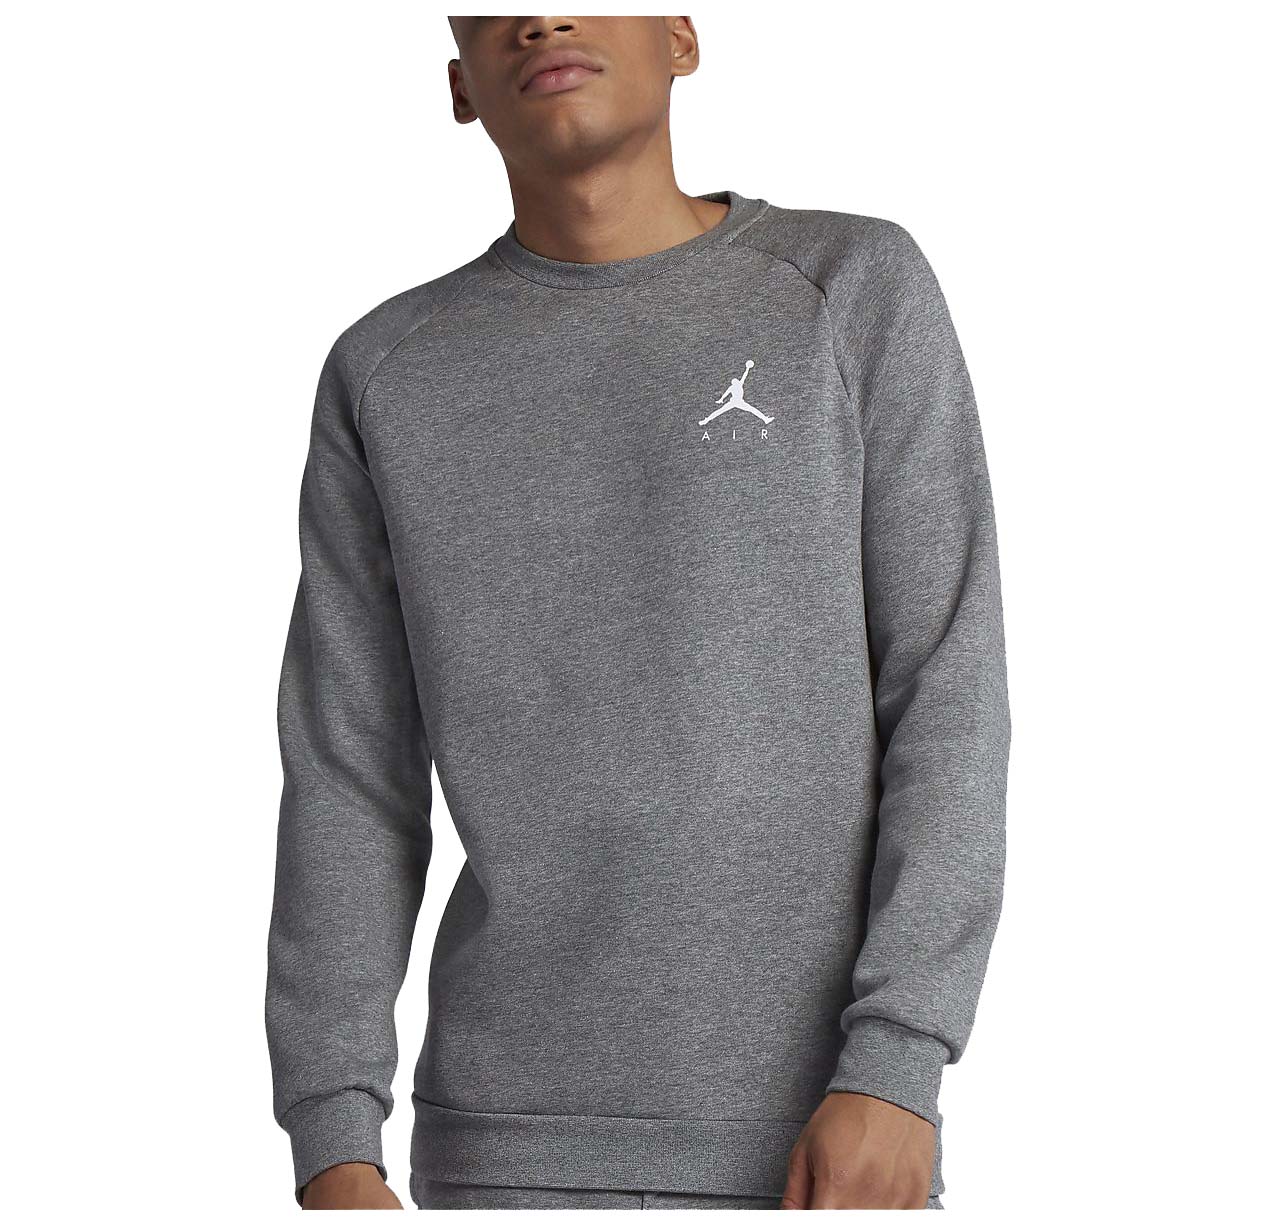 Jordan Men's Jumpman Crewneck Active Sweatshirt | eBay